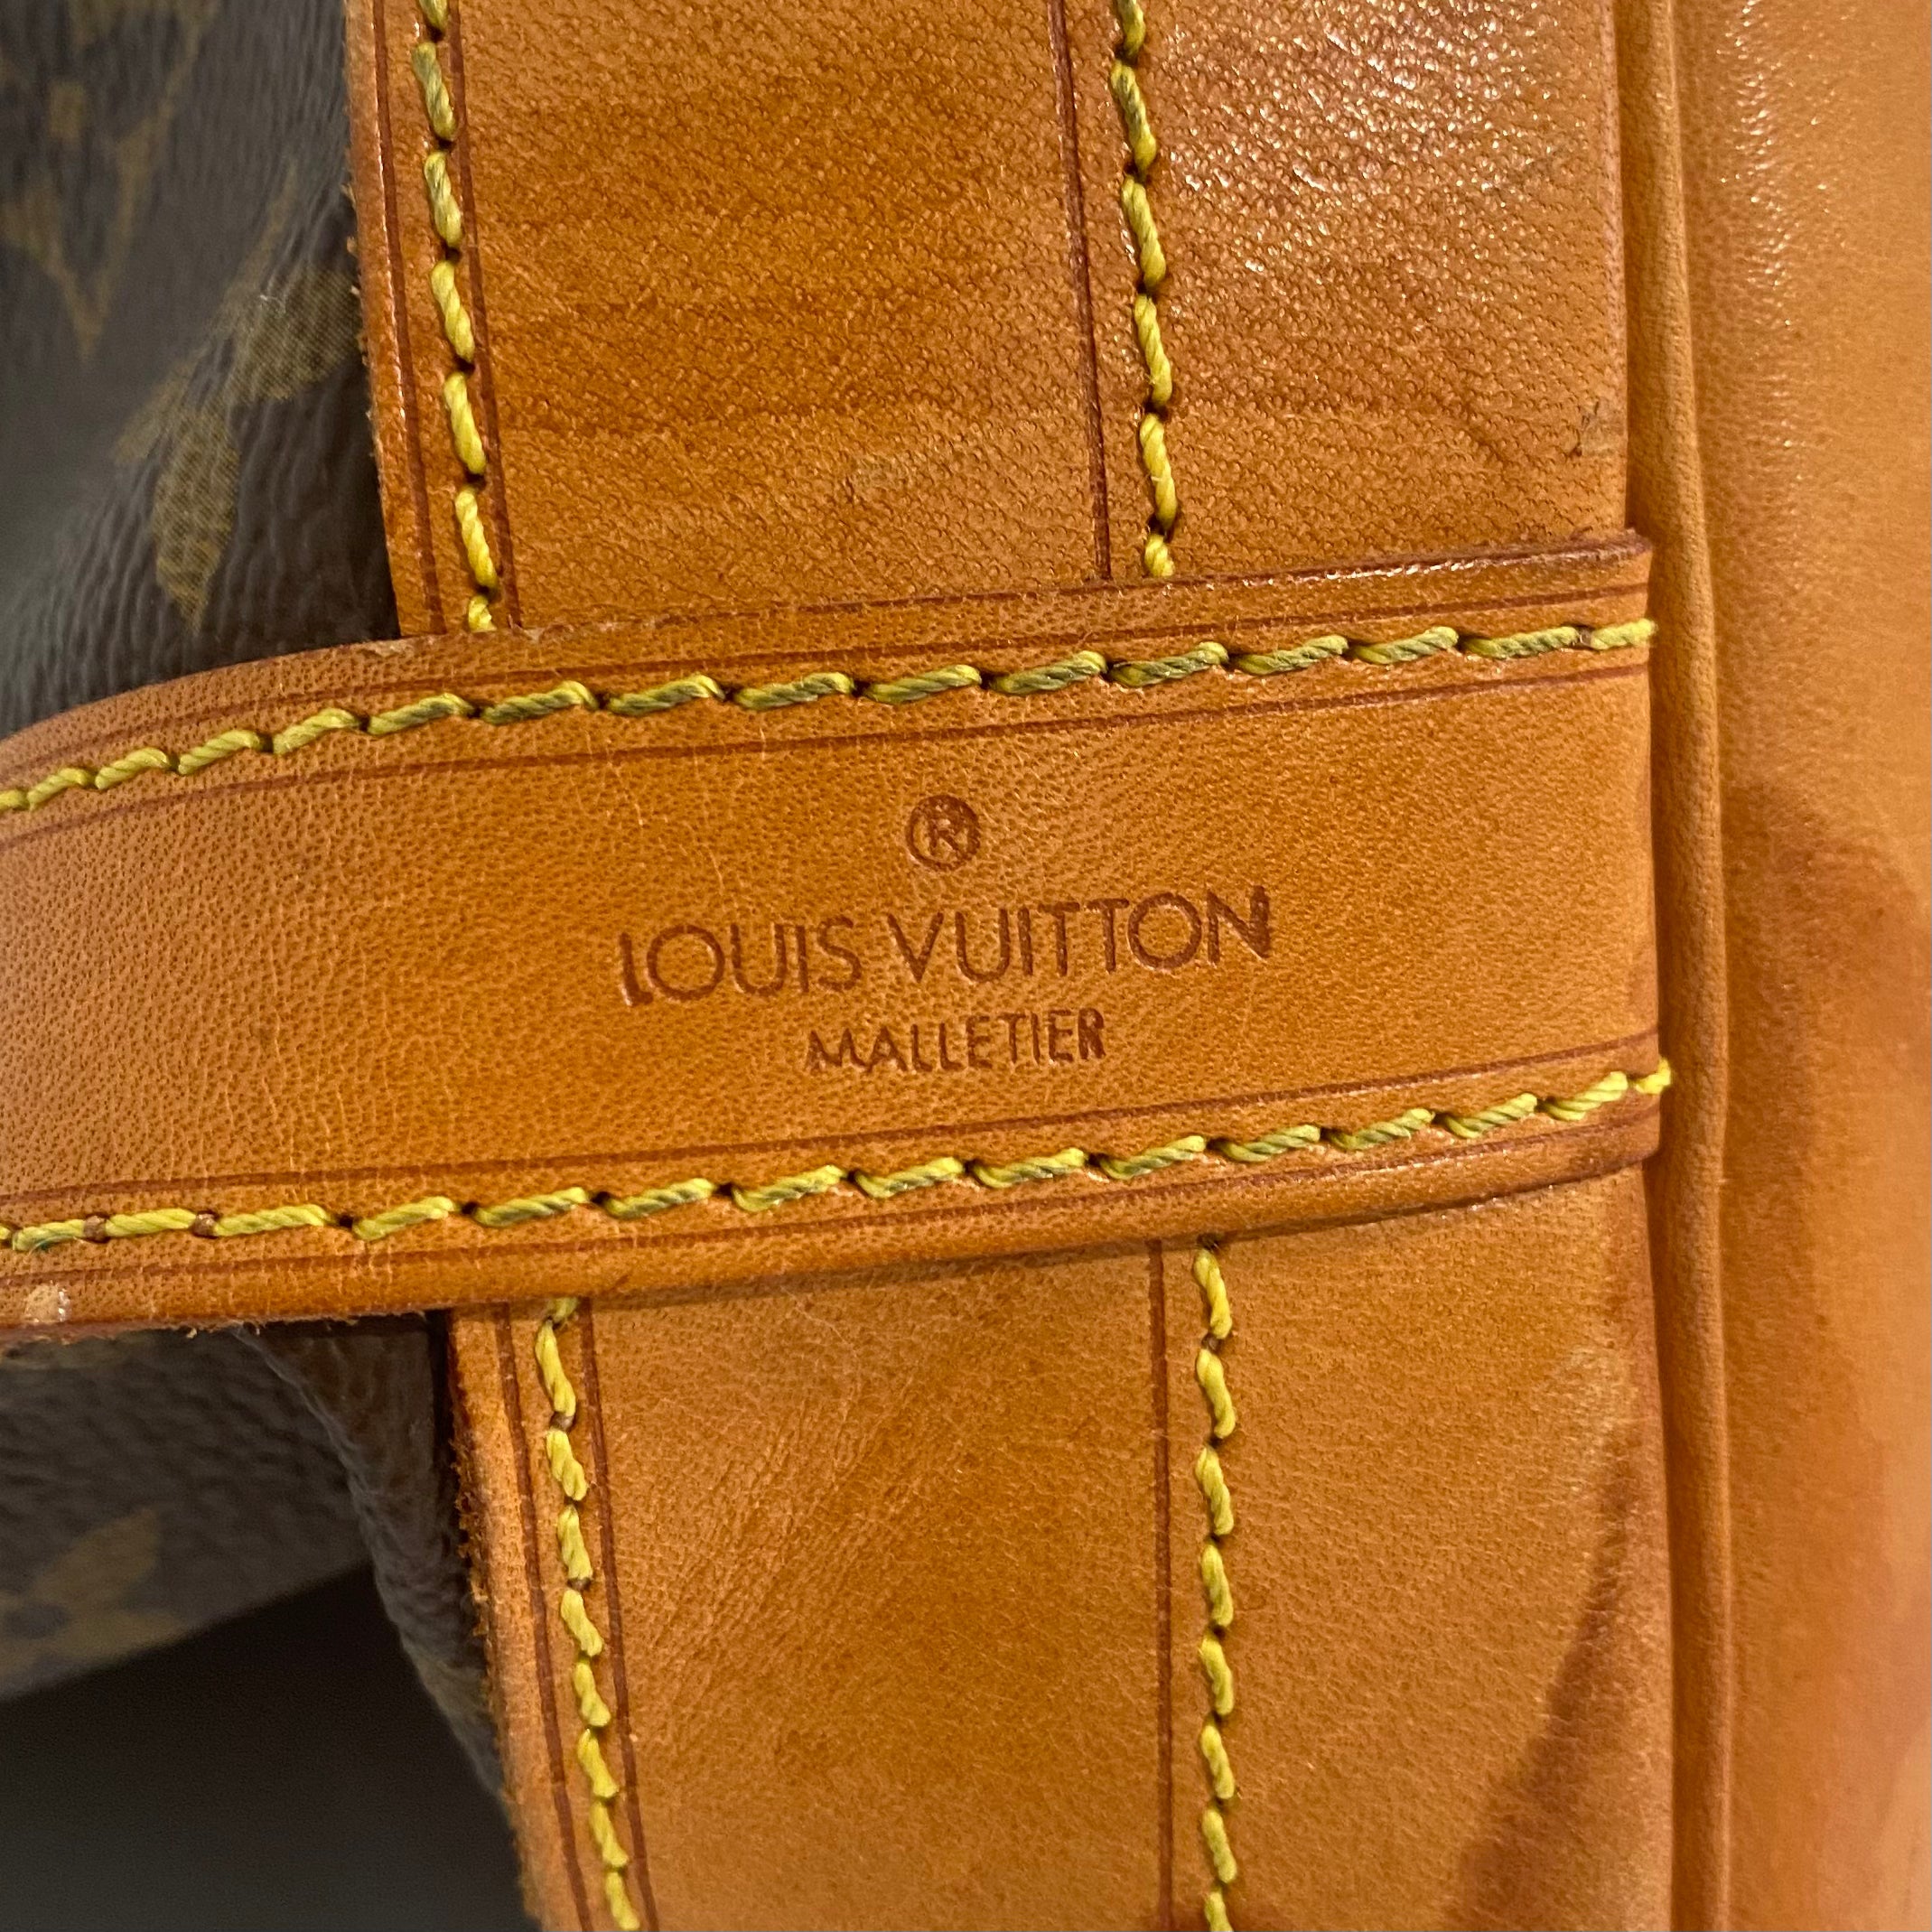 Unboxing vintage, discontinued Louis Vuitton Mini Noe 💕💕💕 